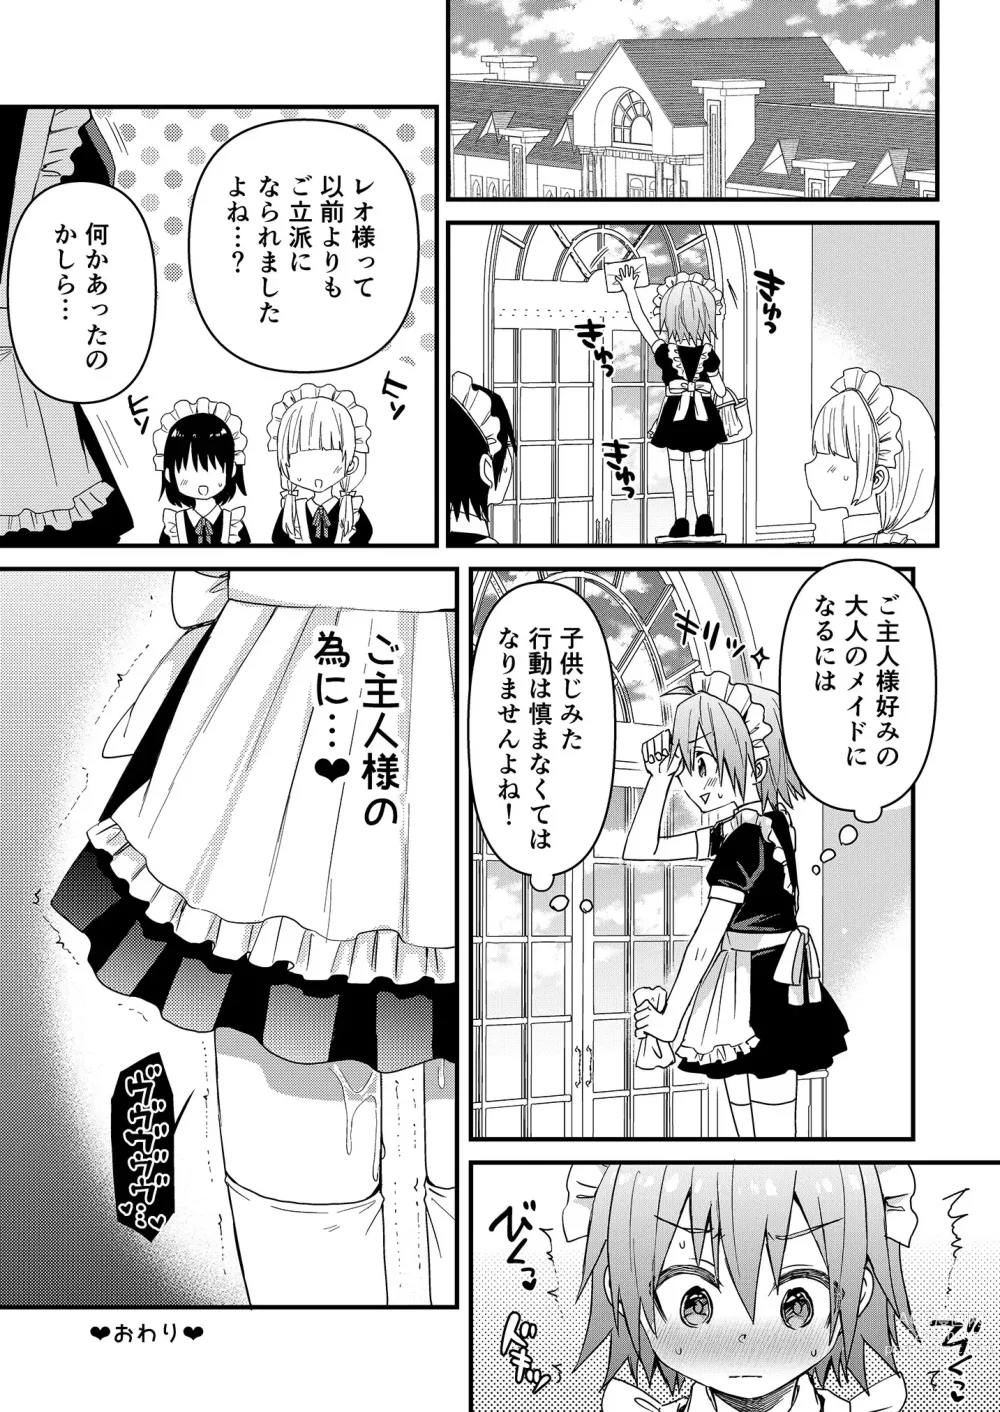 Page 28 of doujinshi Kawaii Maid no Otokonoko Do-S Goshujin-sama to Otona no Date Hen